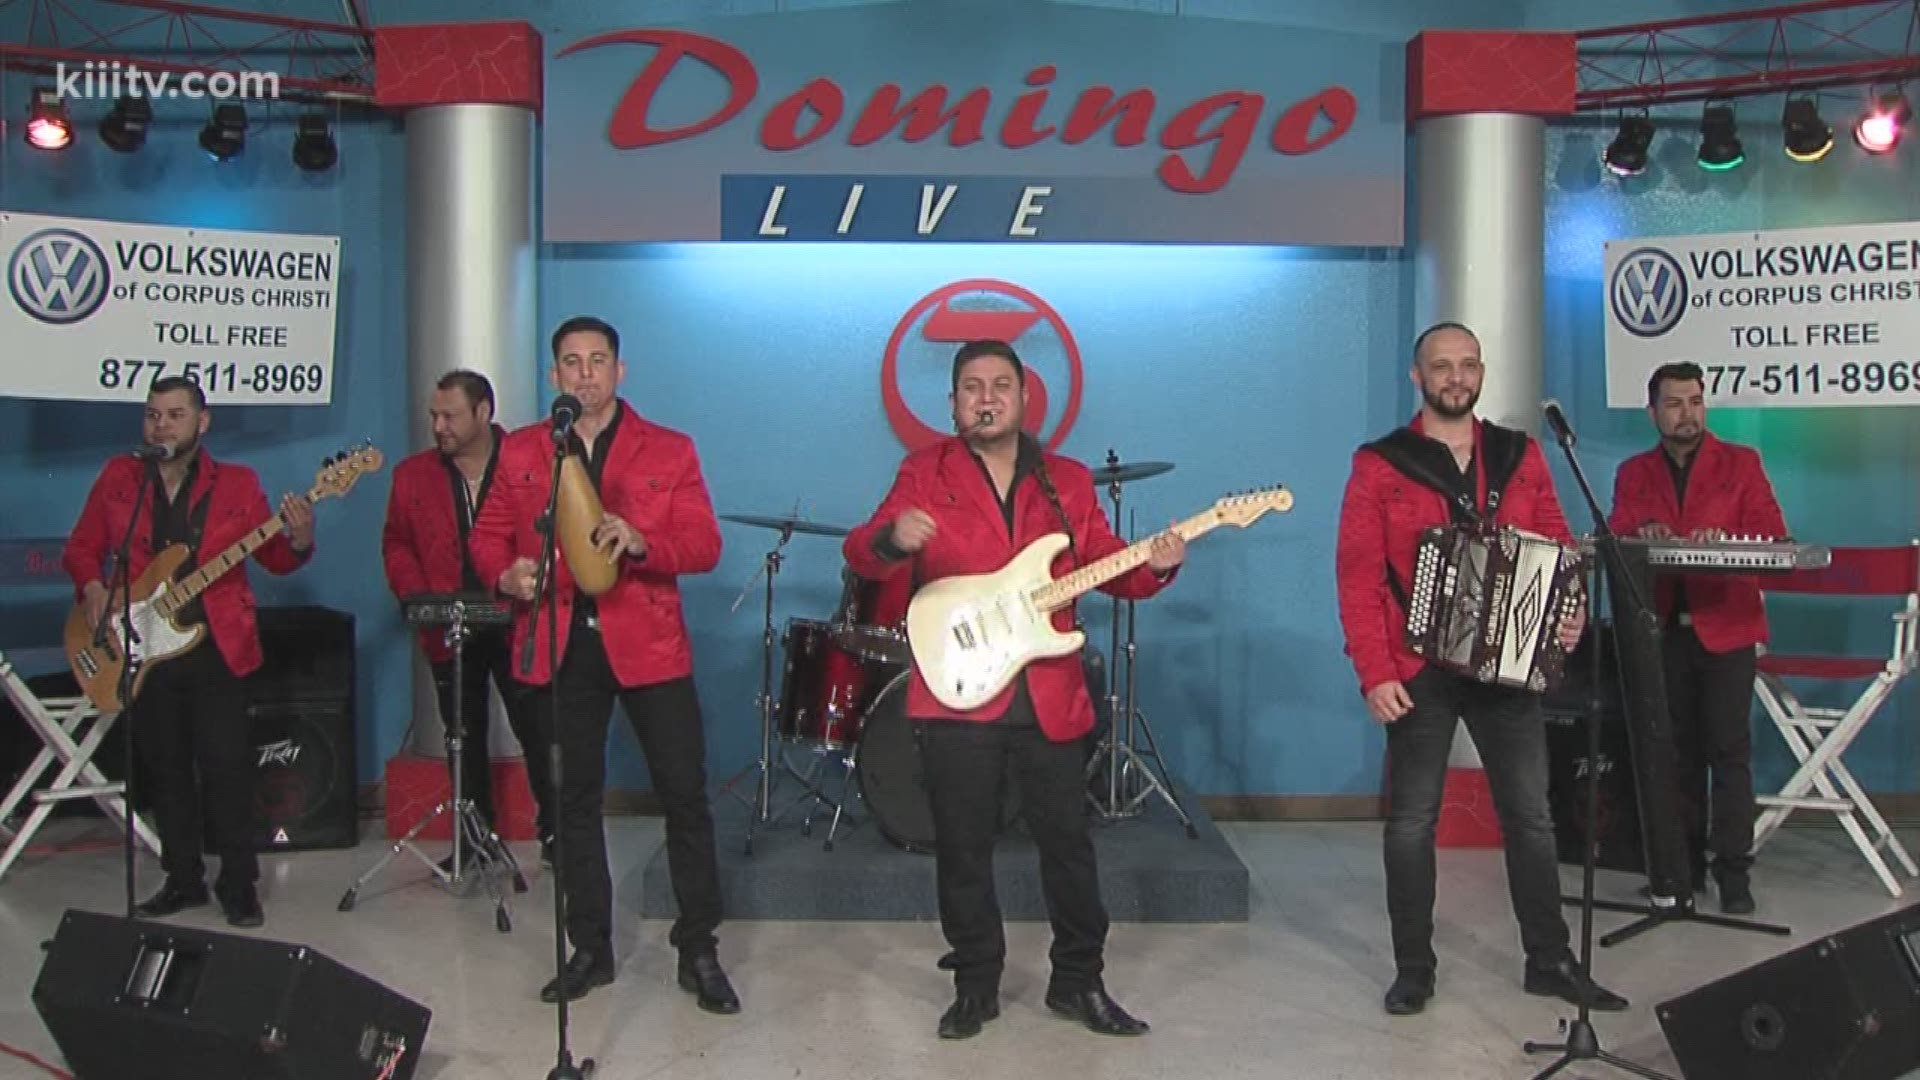 Los Mas Romanticos Perform "No Tengo Nada" on Domingo Live.